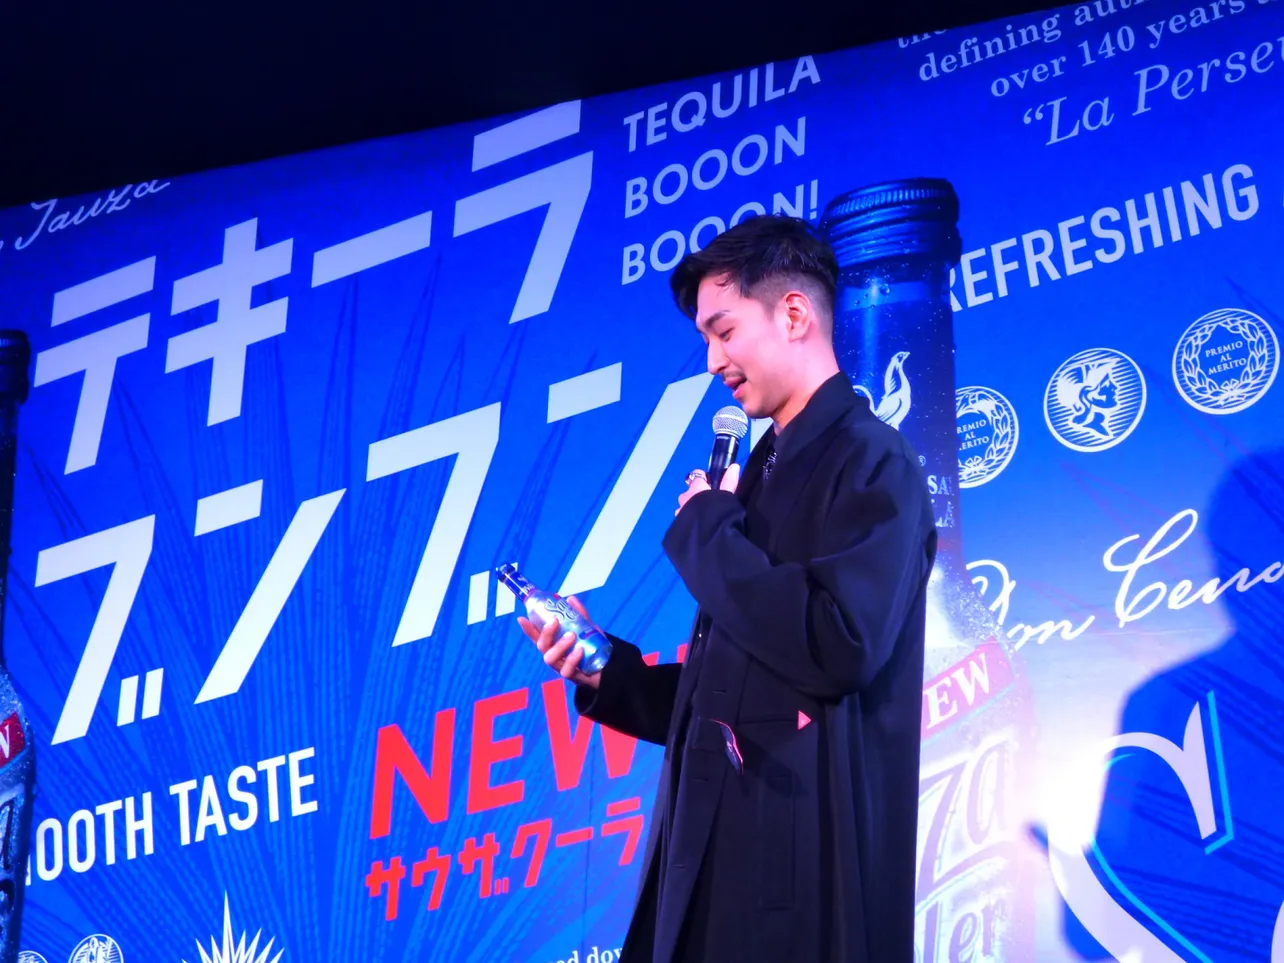 「たくさん友達と一緒に乾杯したいなと思います」と飲む機会が多いことを明かした松田翔太